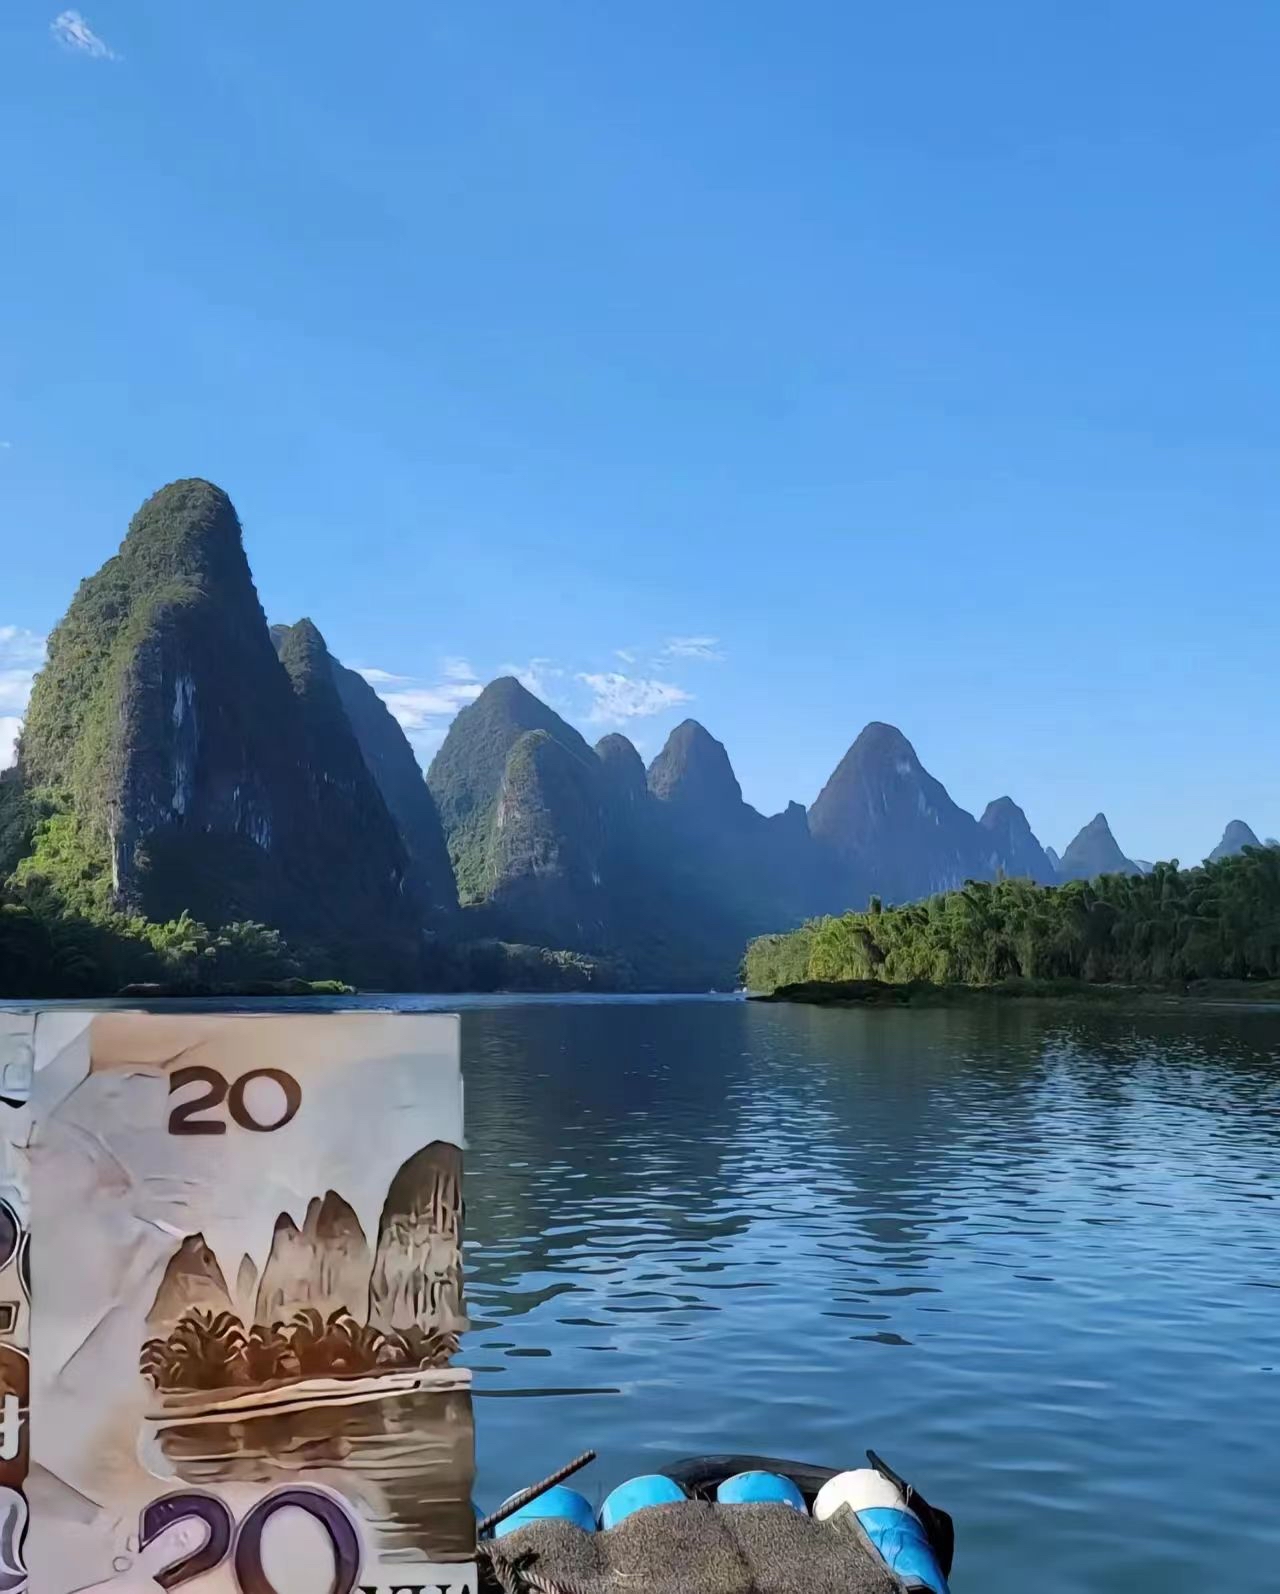 186元人民币风景壁纸图片